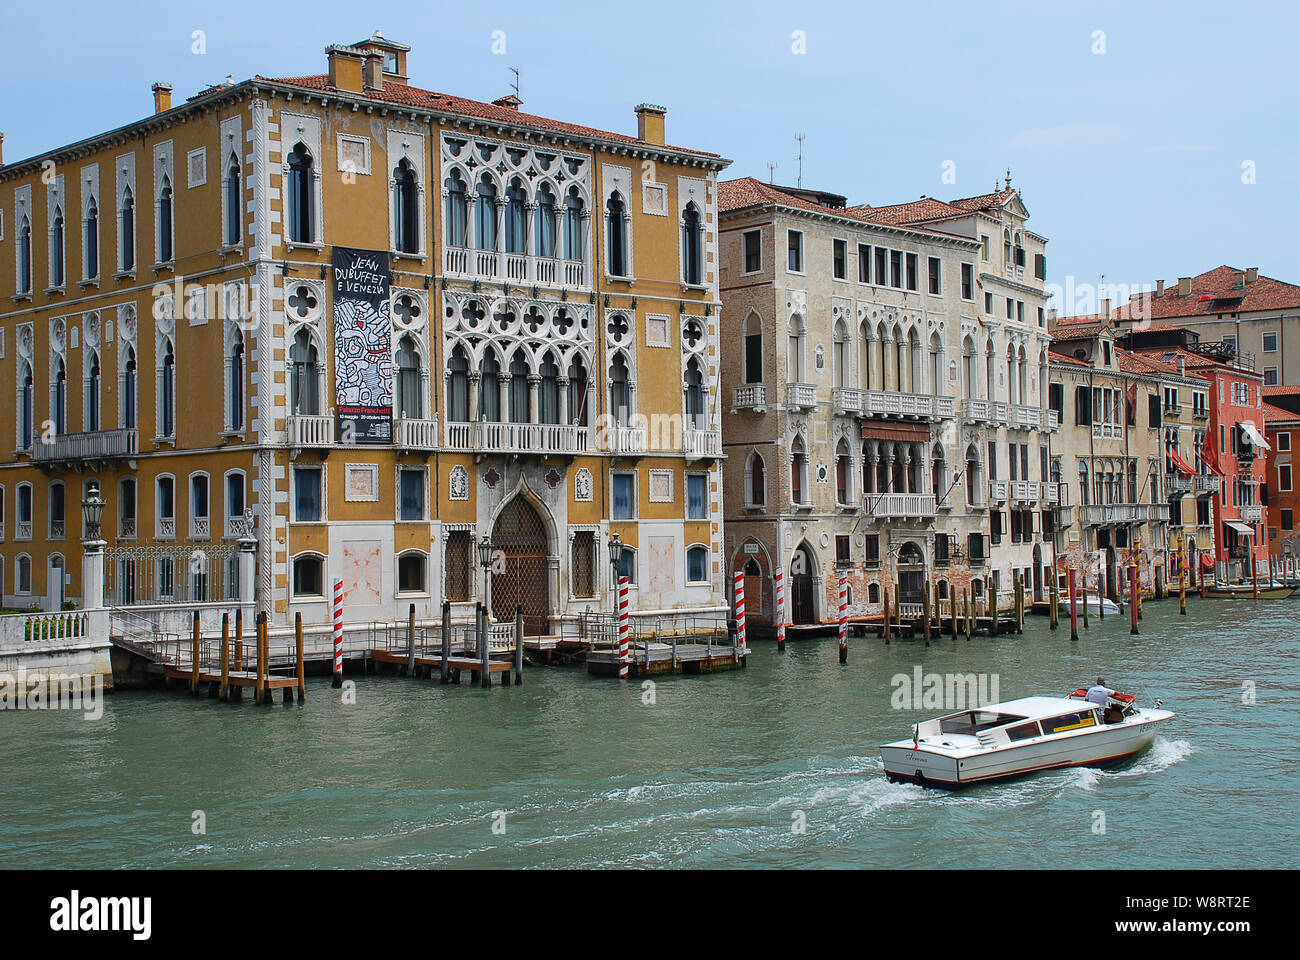 Vue du Grand Canal à Venise, Italie, de l'Academia Bridge : Palais Cavalli-Franchetti Banque D'Images